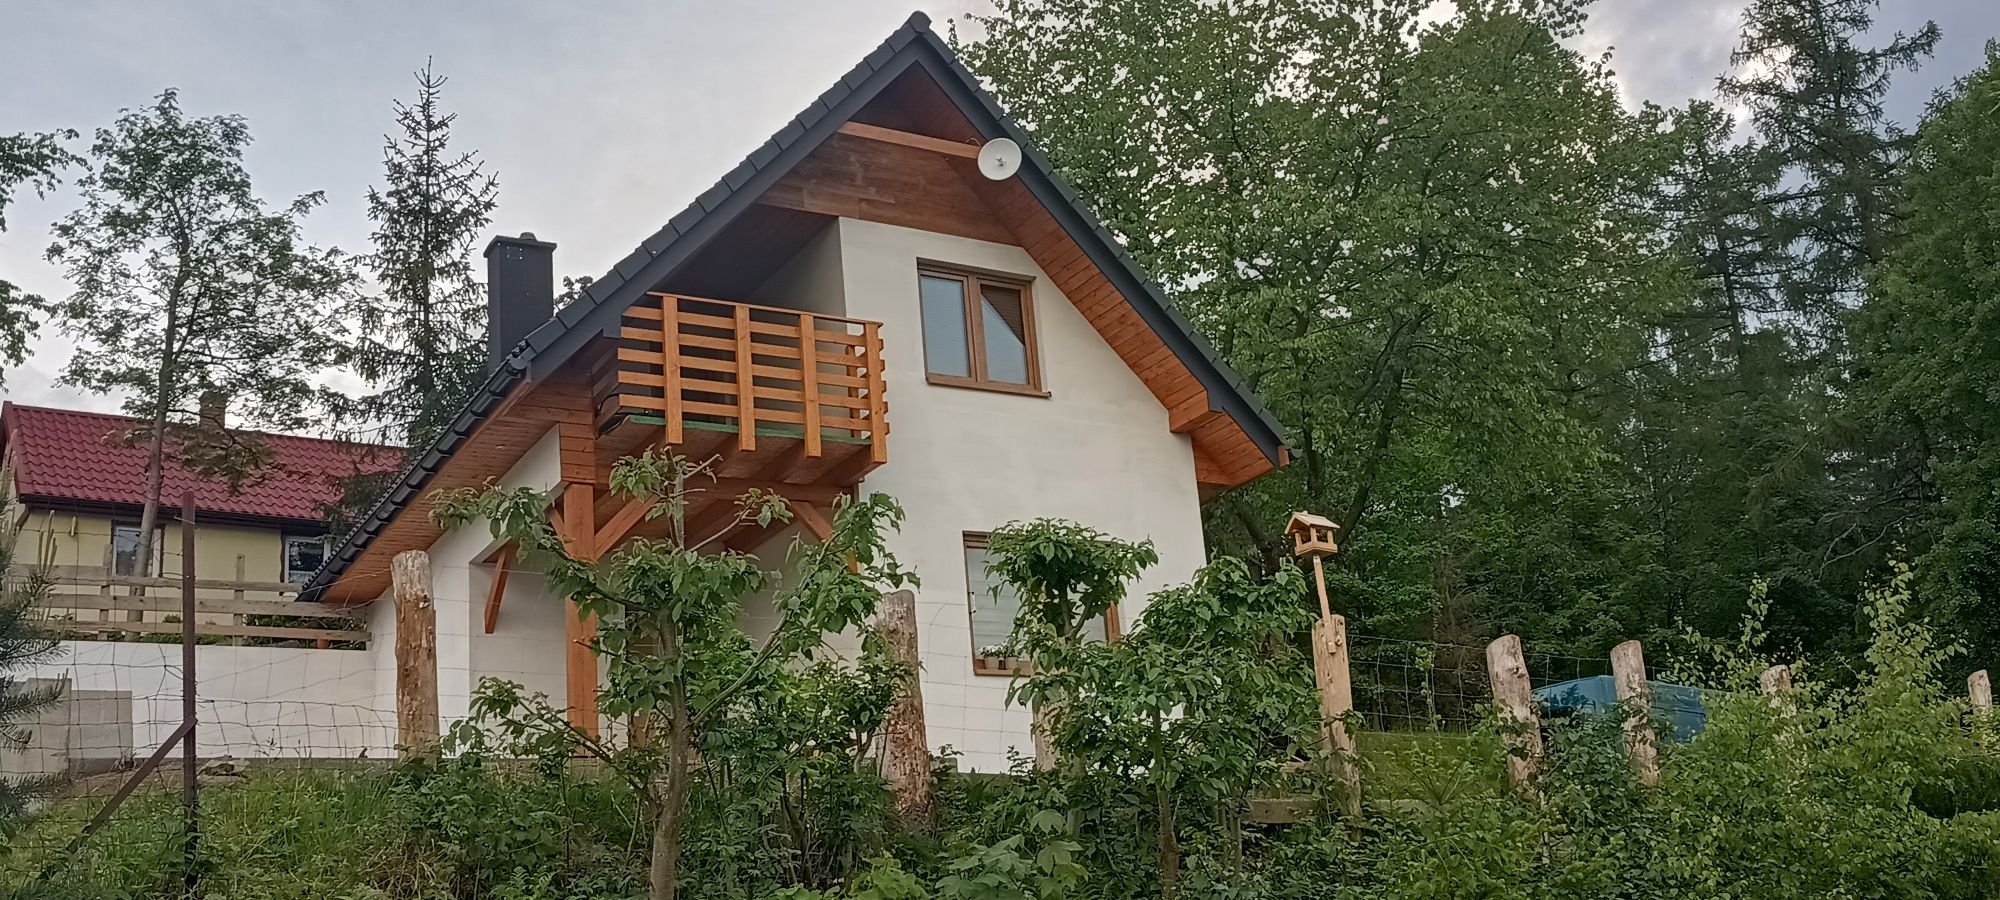 Nowy domek do wynajęcia w Lipowej koło Szczyrku